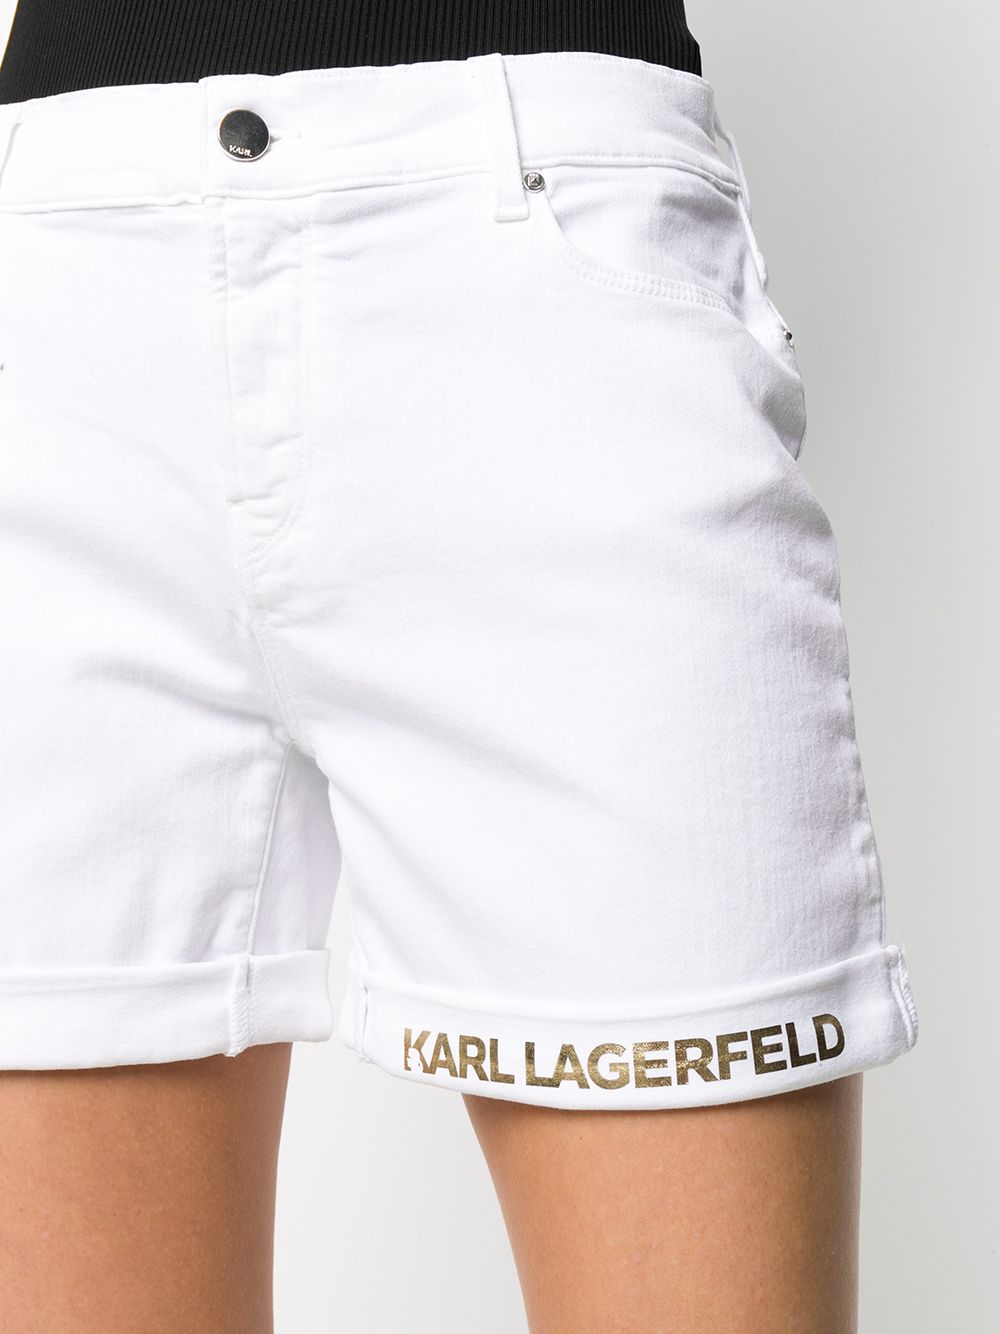 фото Karl lagerfeld джинсовые шорты с логотипом